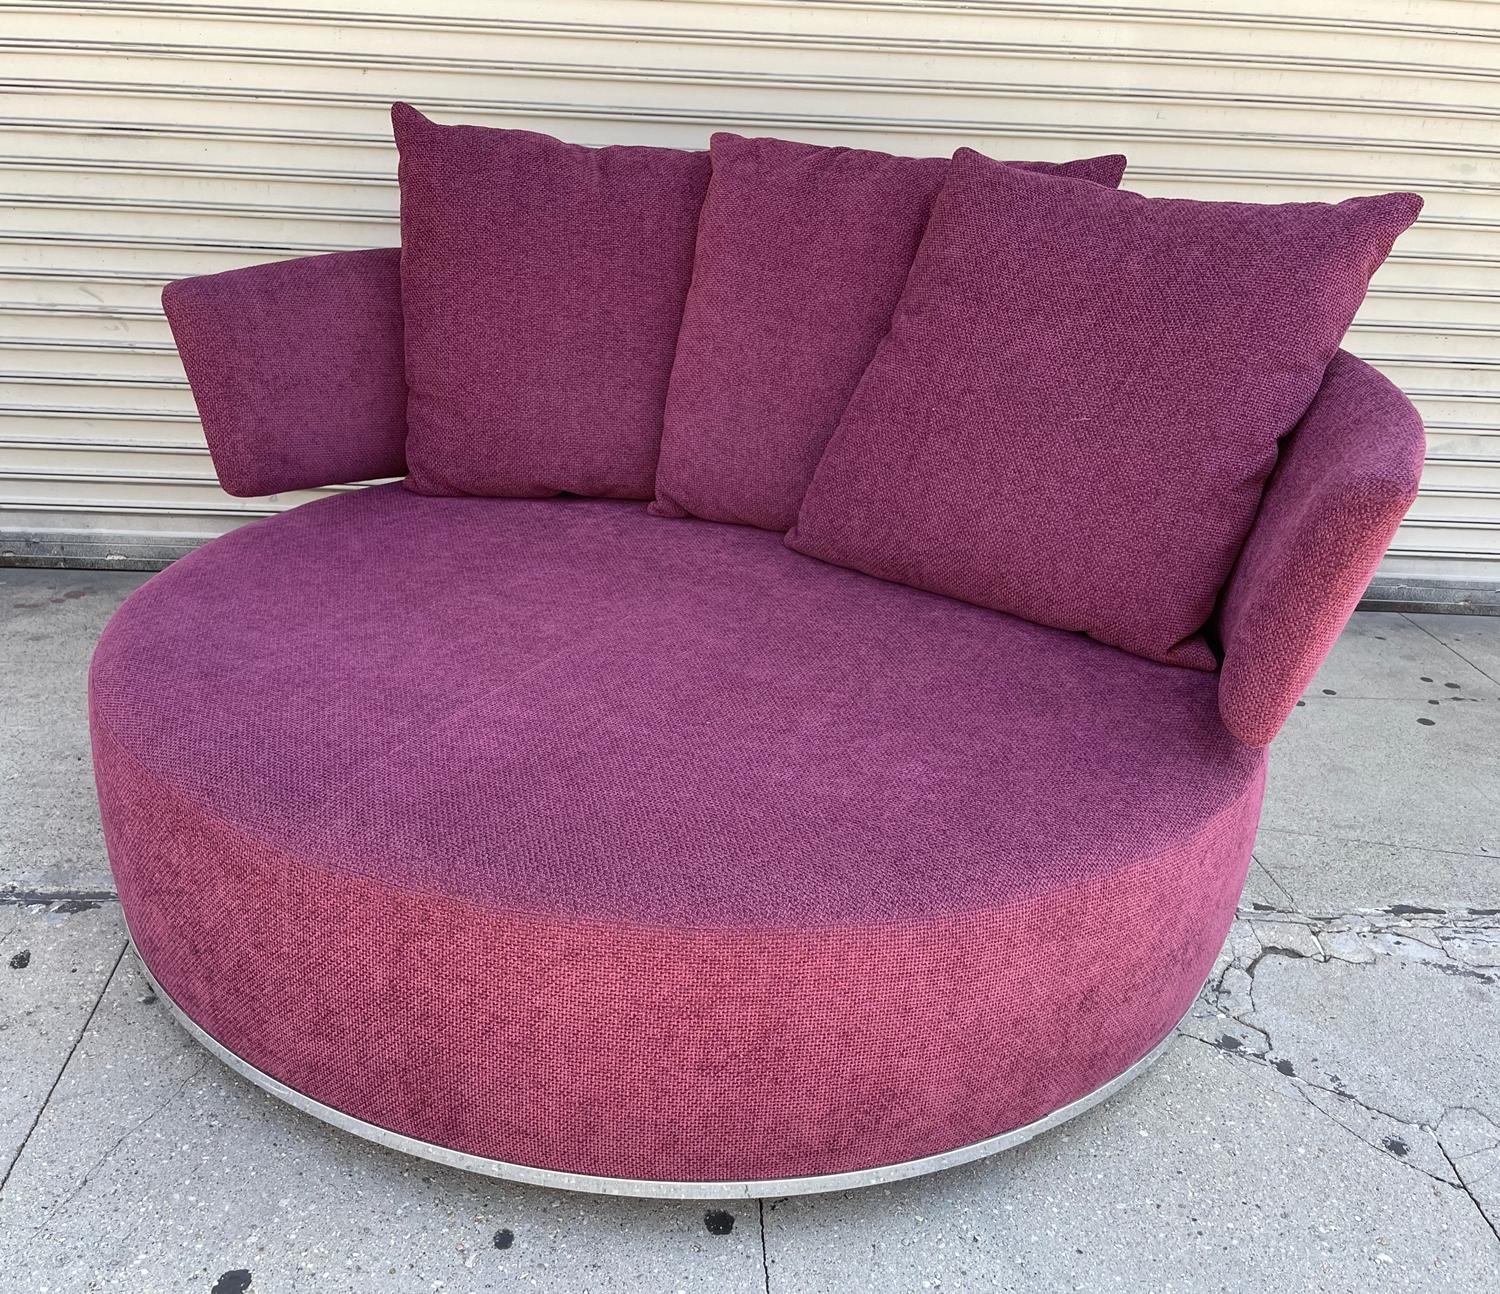 Stunning circular swivel sofa 